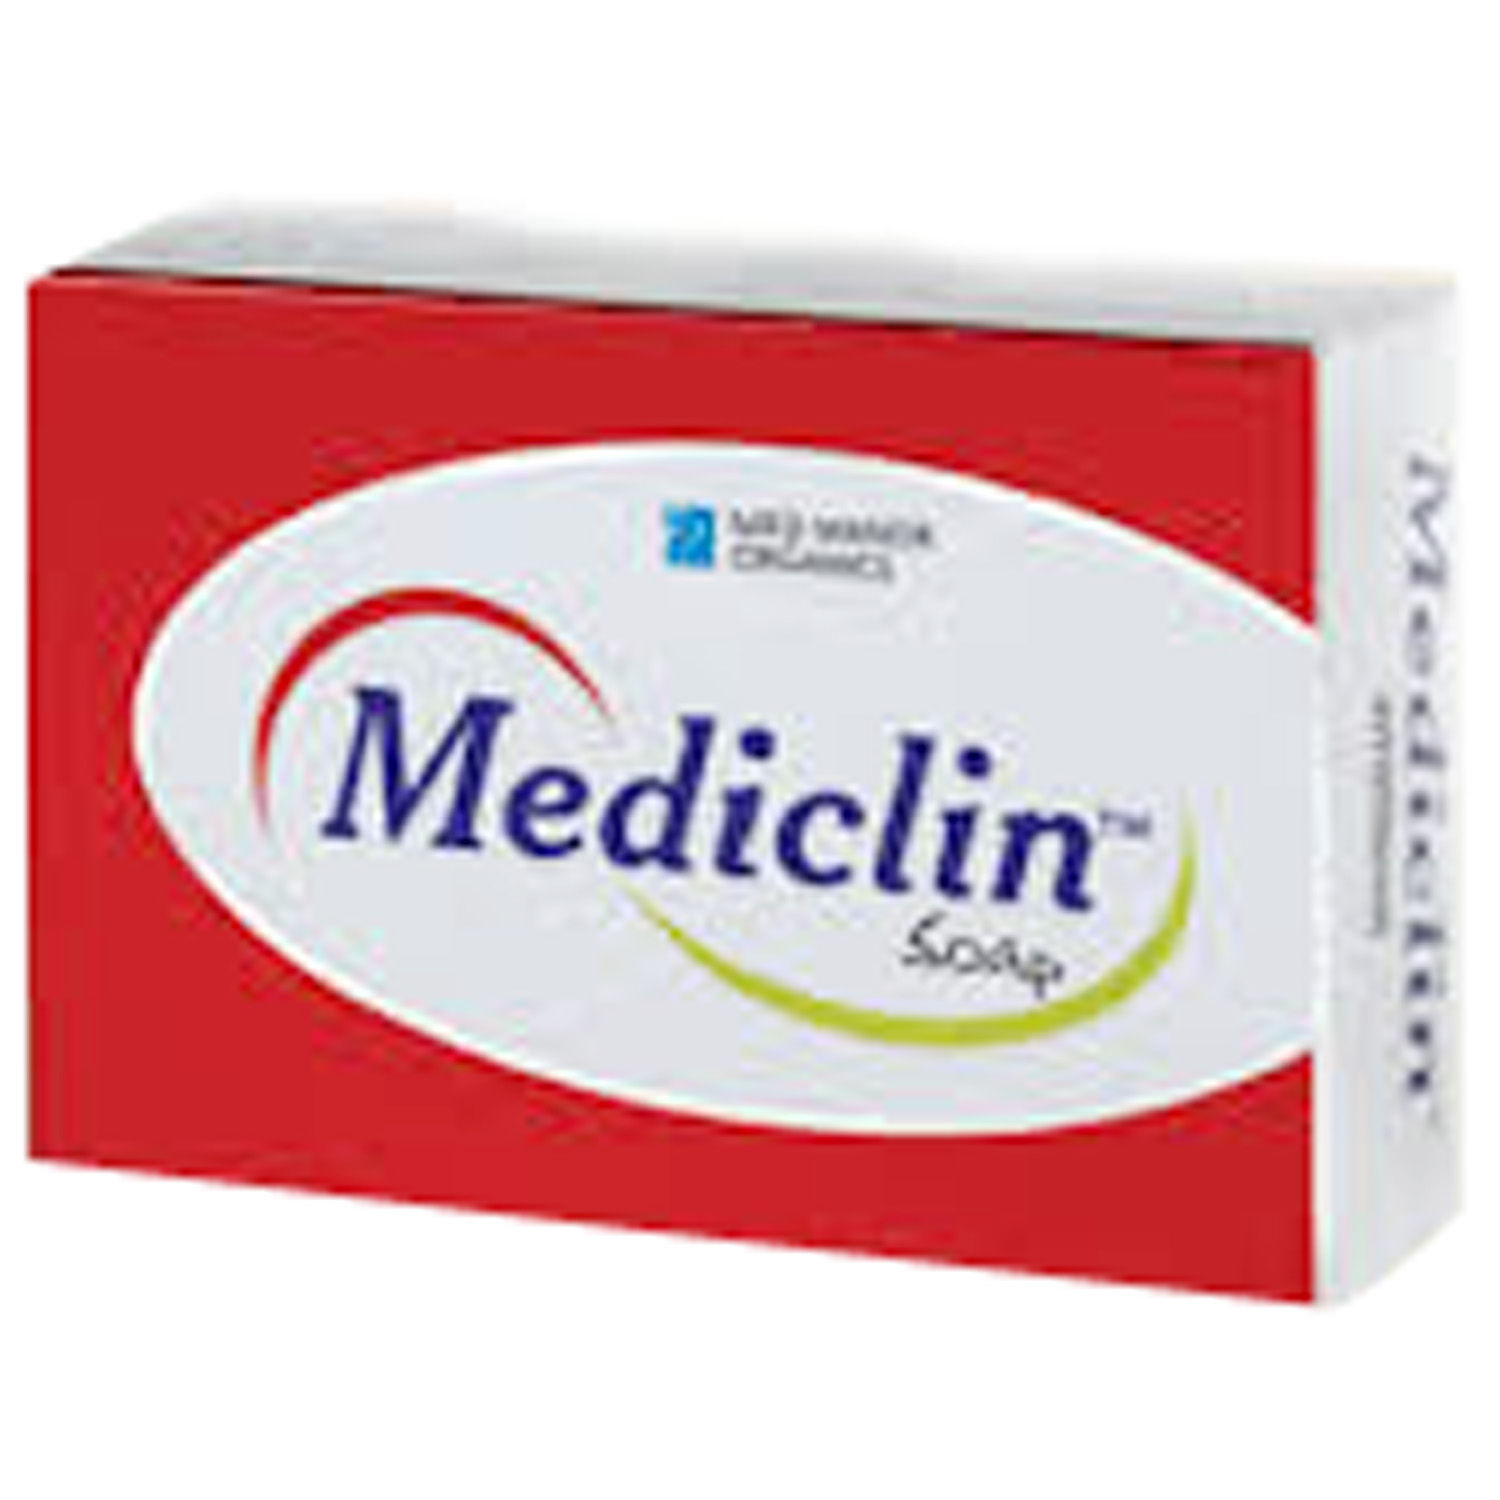 Buy Mediclin Soap, 75 gm Online